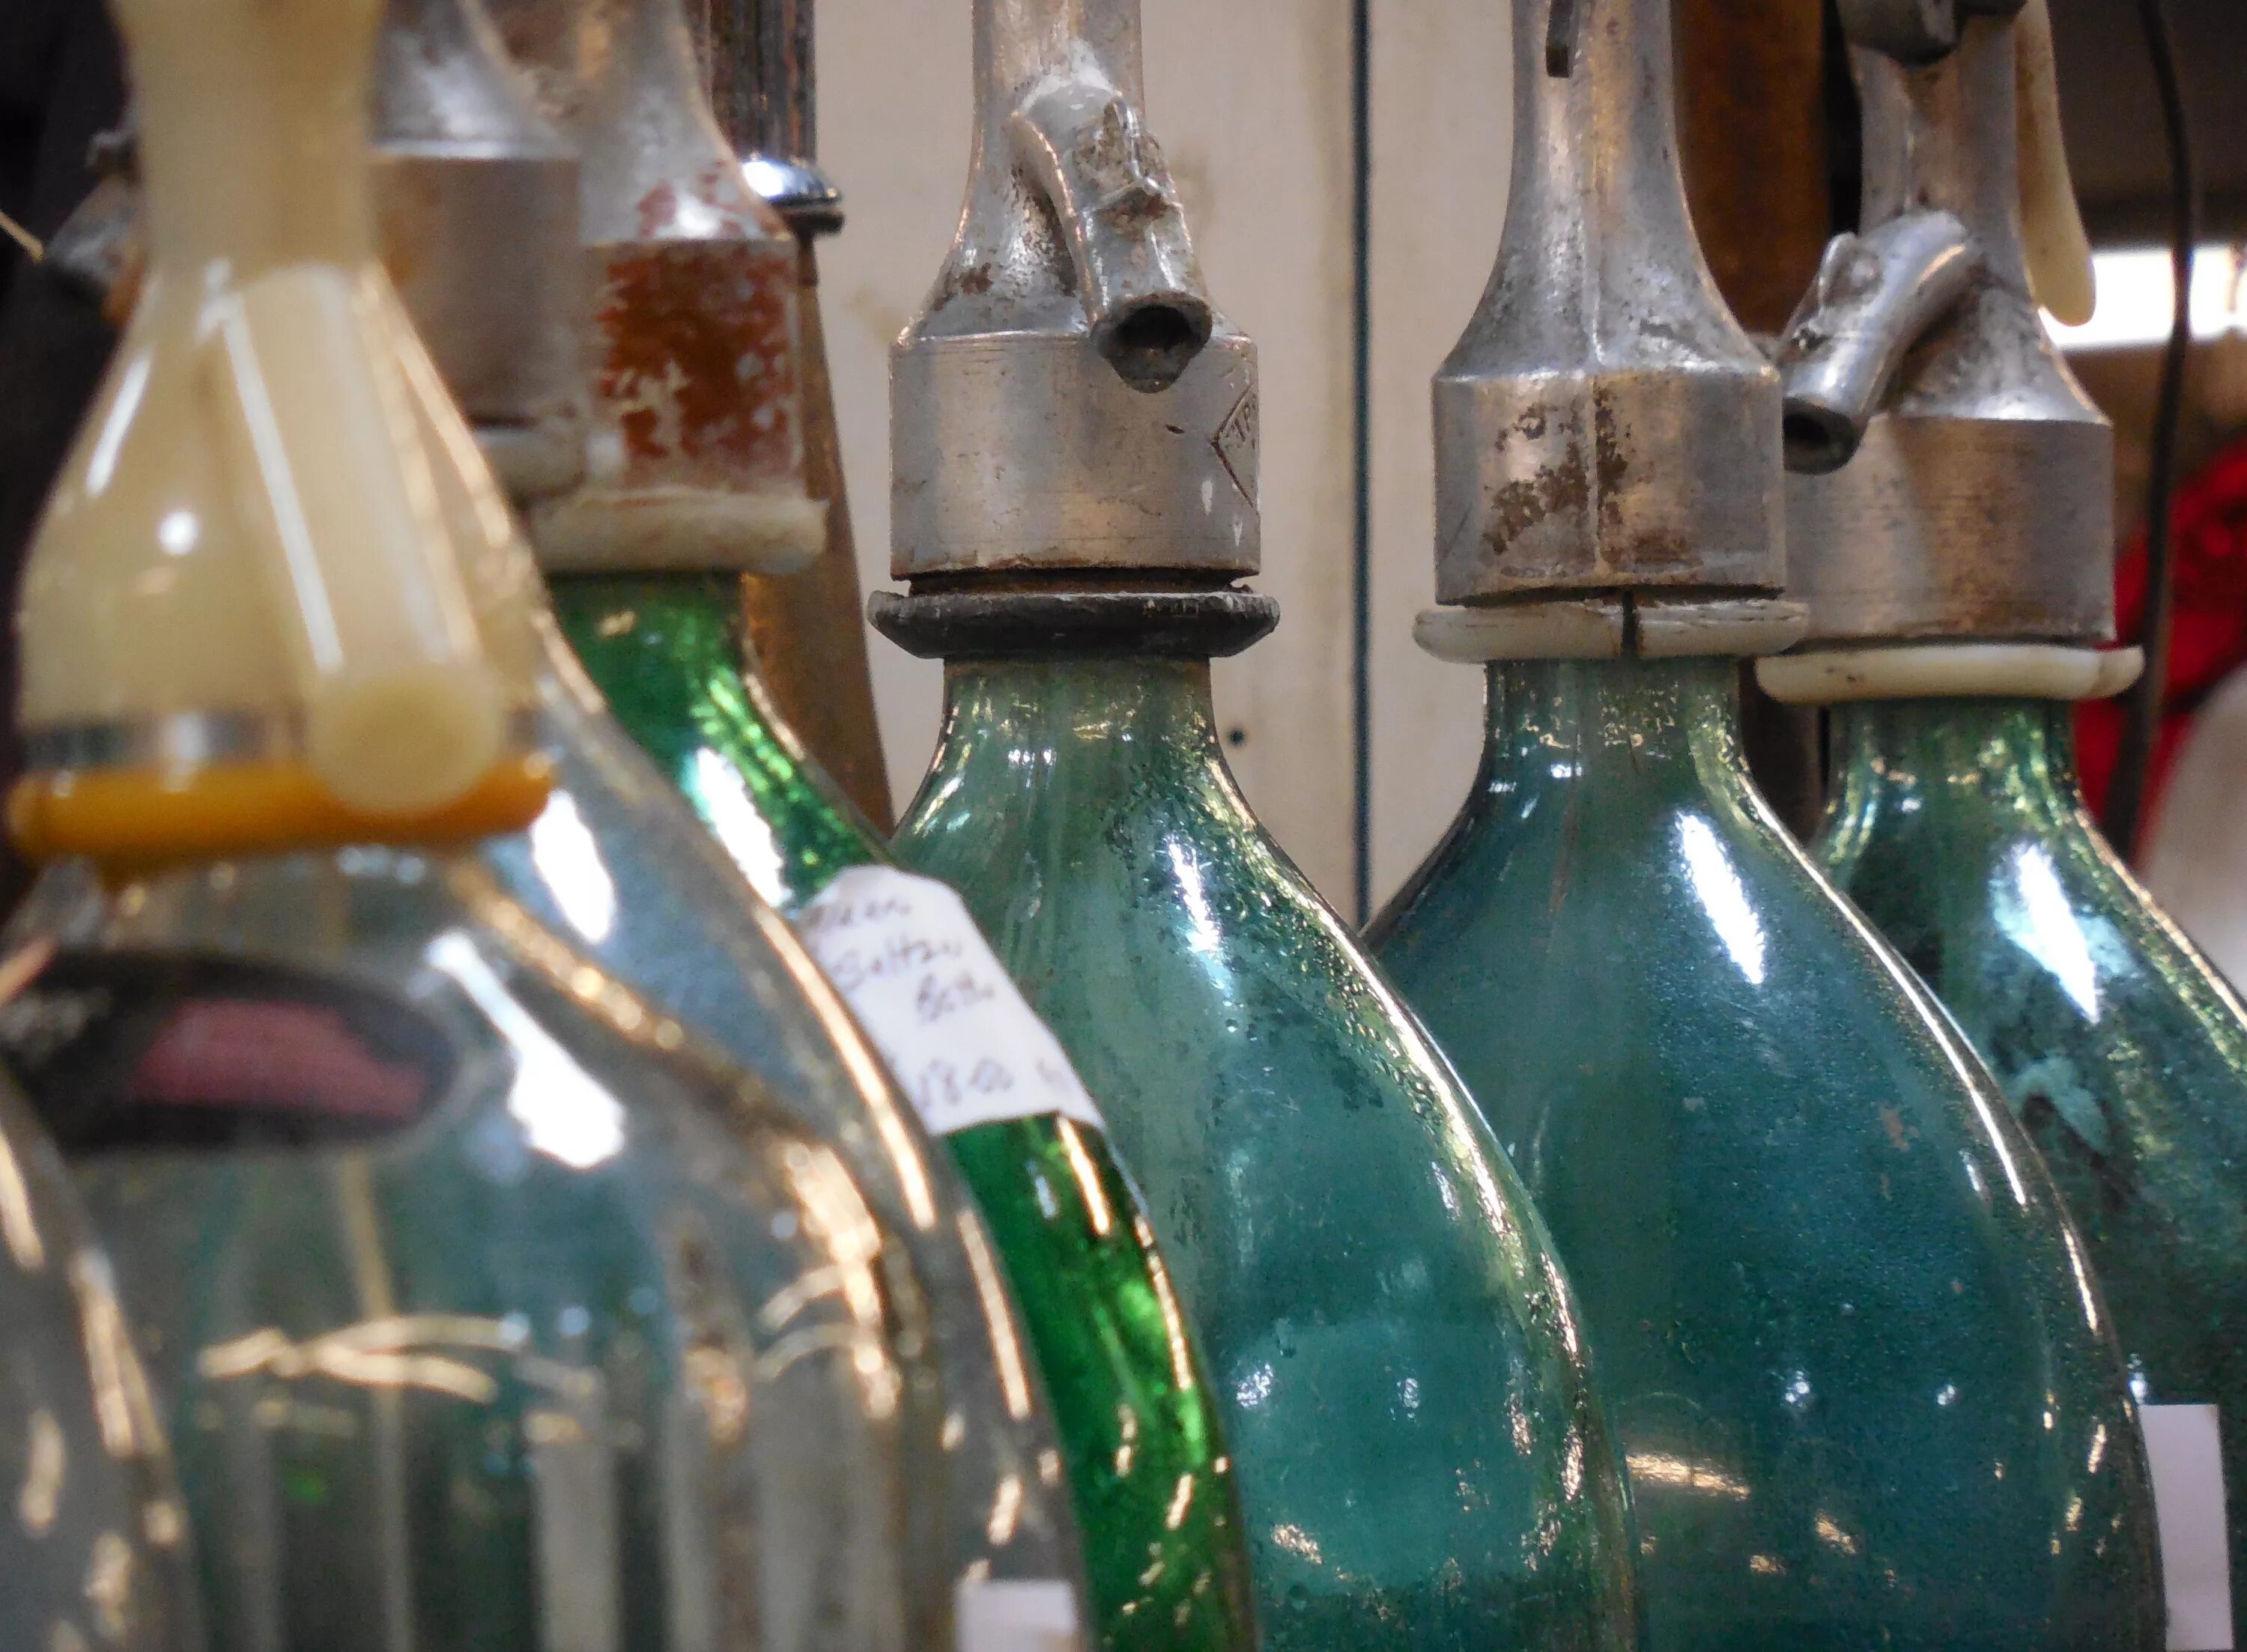 Старинные бутылки из стекла. Алкогольные напитки в стеклянных бутылках. Трехлитровая бутылка. Коллекция пустых бутылок.